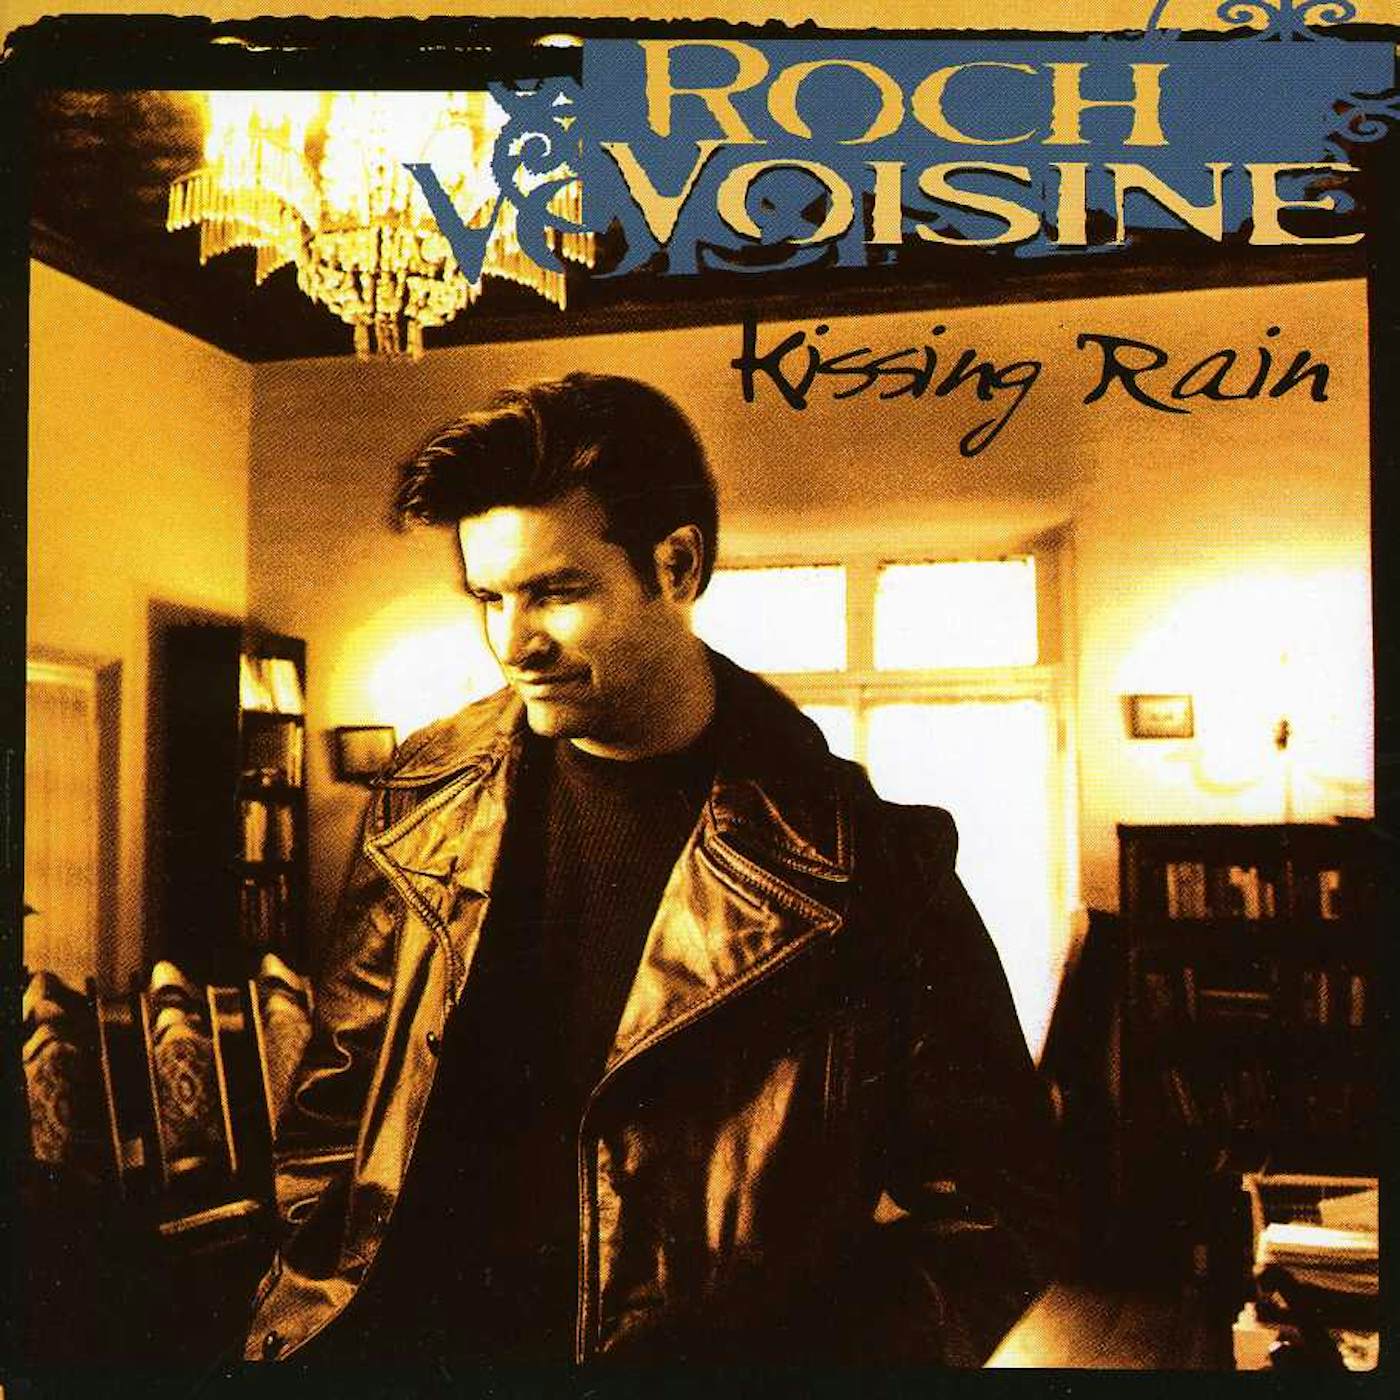 Roch Voisine KISSING RAIN CD